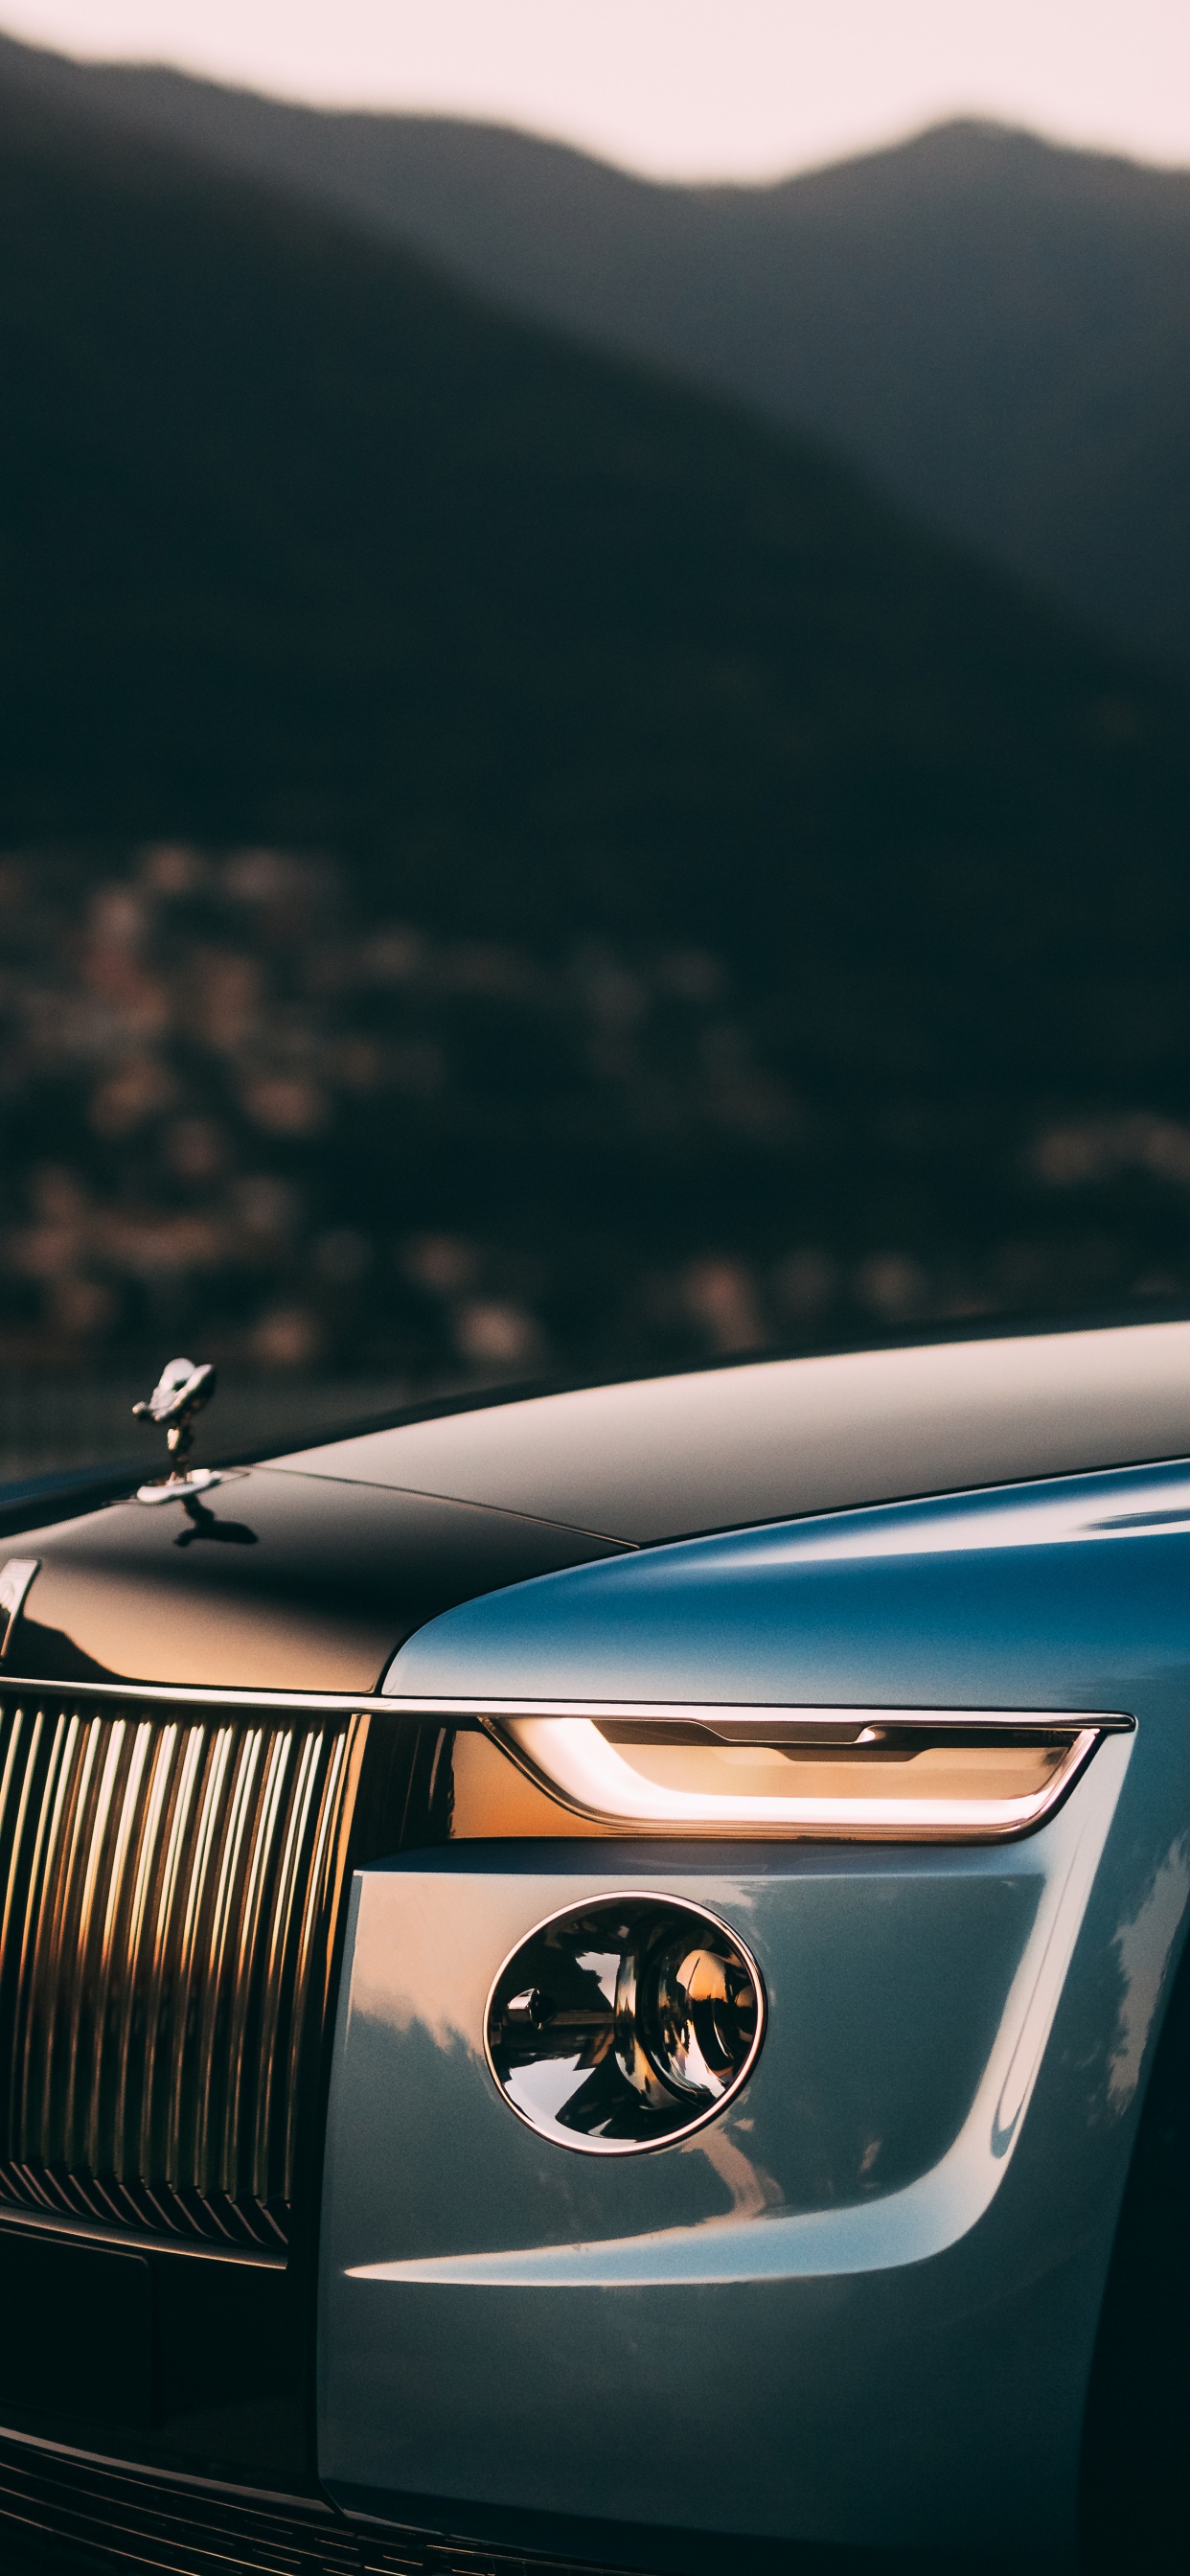 Rolls-Royce Boat Tail - một tác phẩm nghệ thuật đích thực. Hình ảnh chiếc xe sang trọng này sẽ khiến bạn say đắm vào sức hút vô cùng đặc biệt của nó. Hãy mở rộng tầm mắt để cảm nhận sự tinh tế và đẳng cấp của Rolls-Royce Boat Tail qua bộ sưu tập hình ảnh chất lượng cao này. 